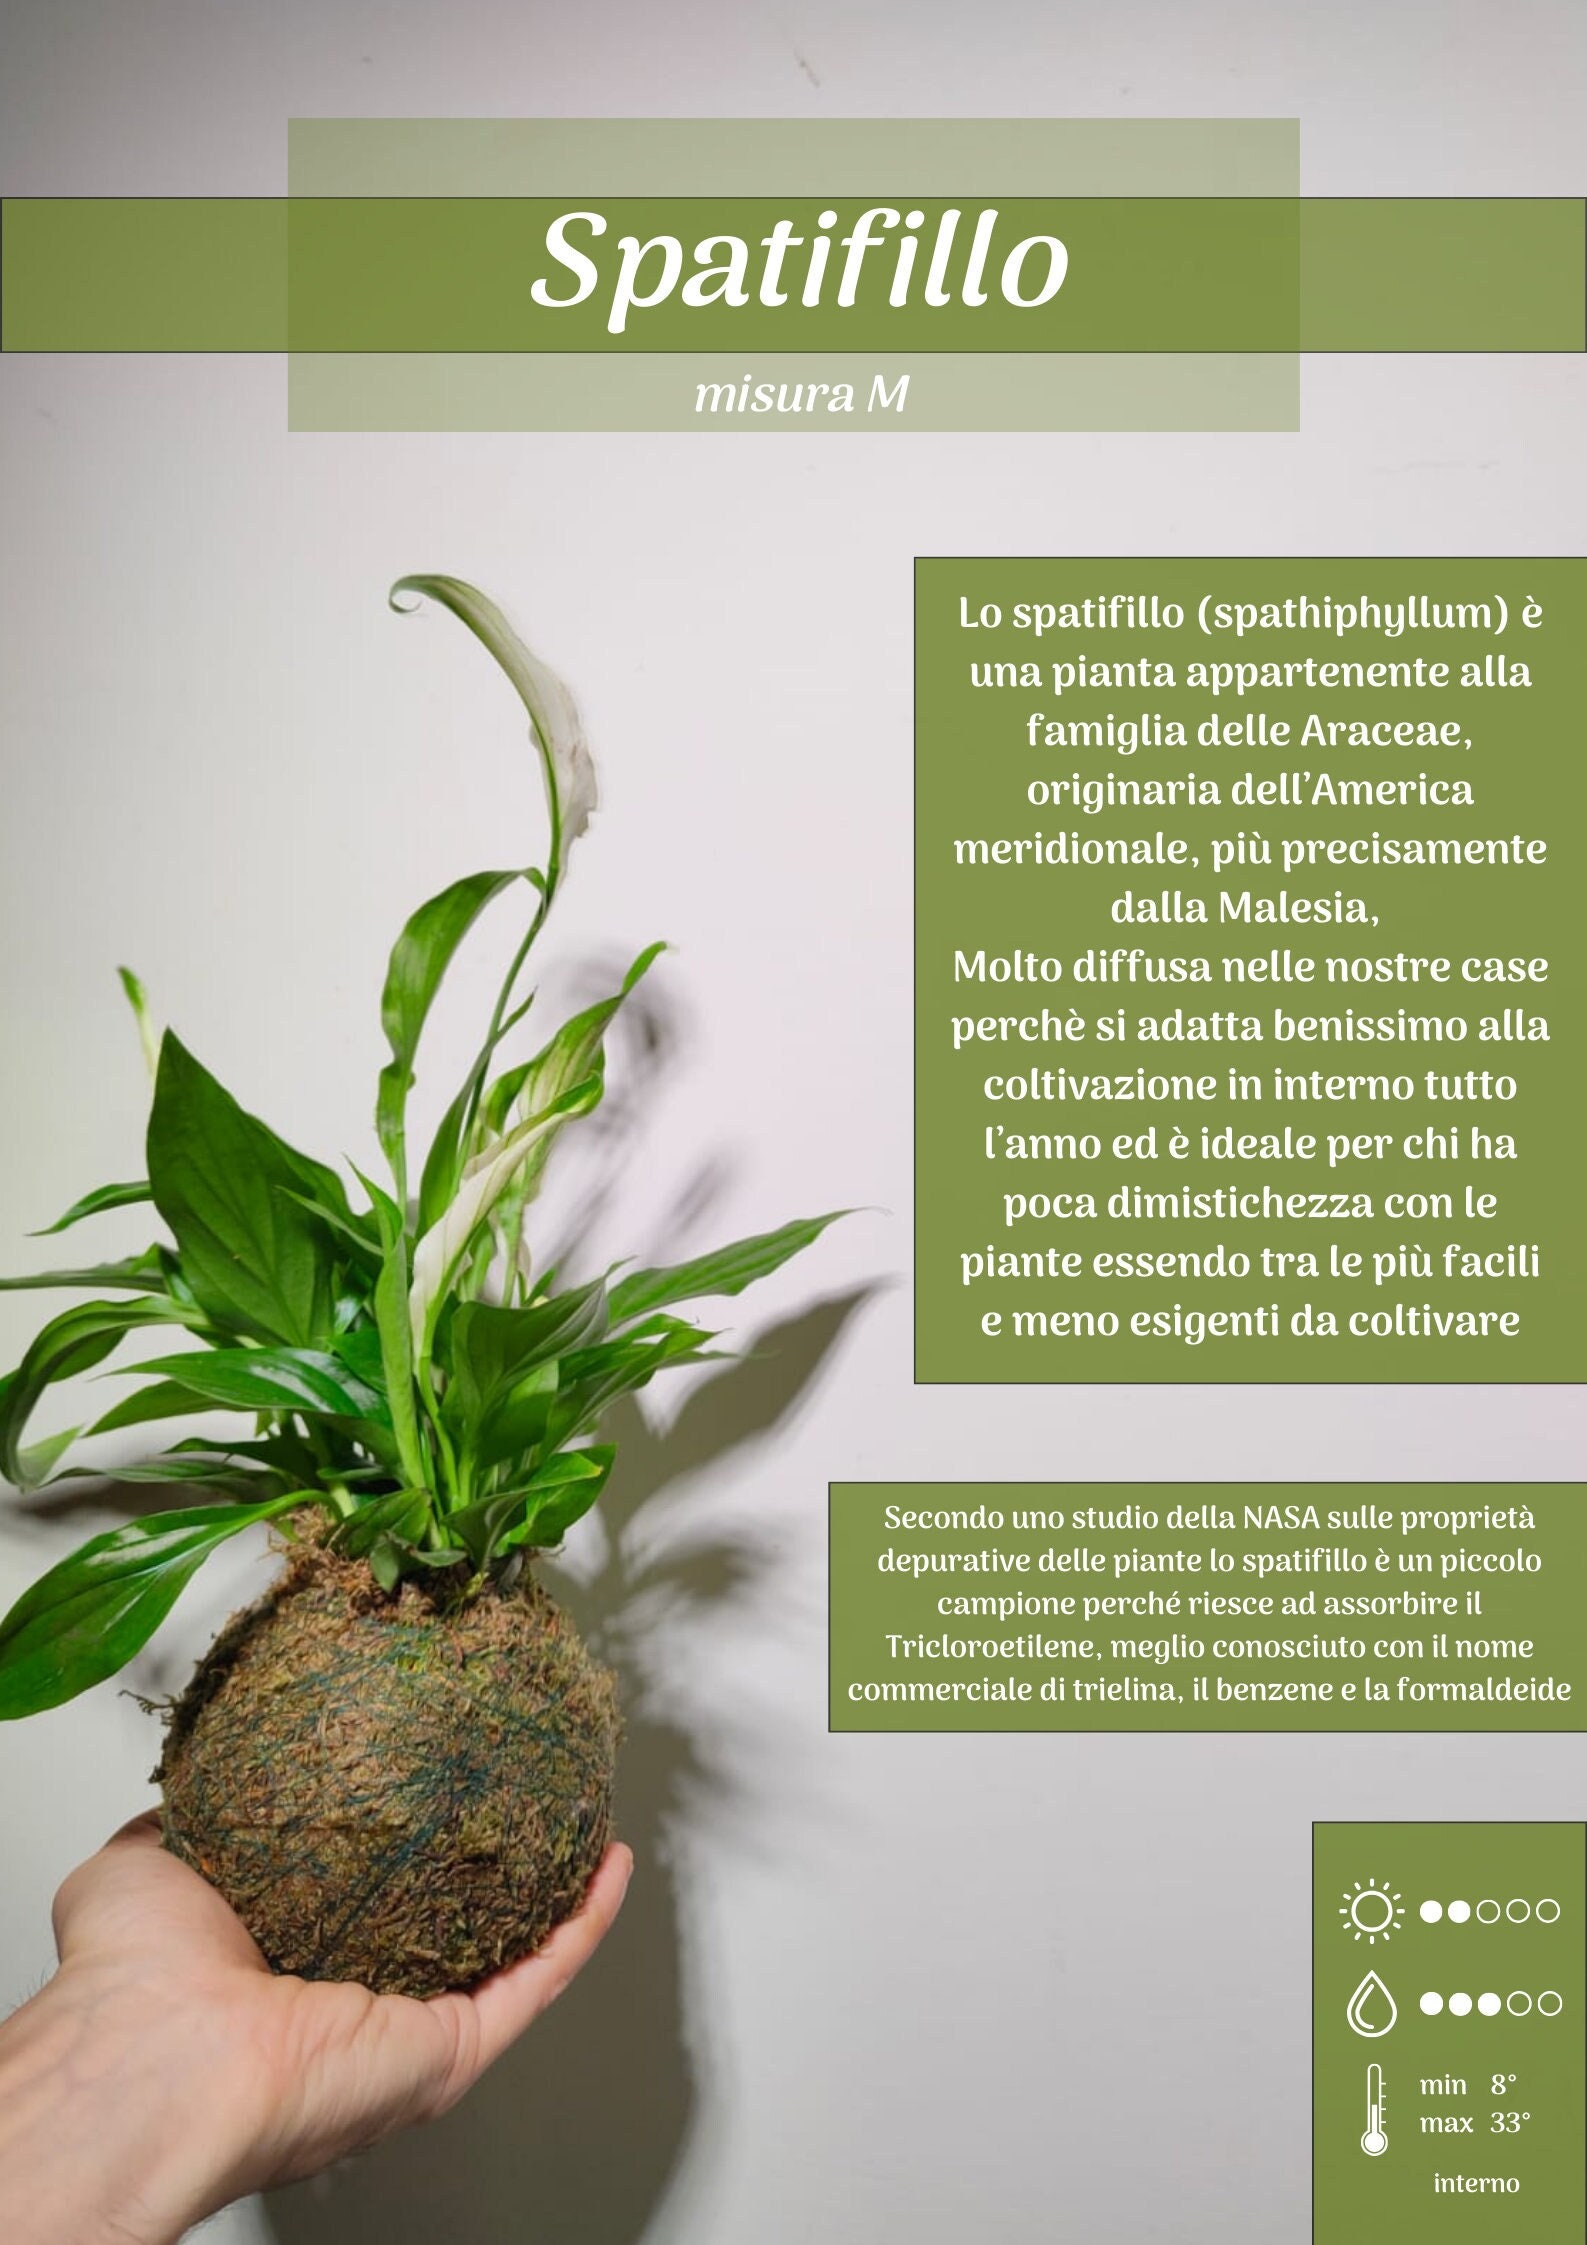 Spathiphyllum Wallisii Pianta Artificiale: Bella, Realistica e di Design